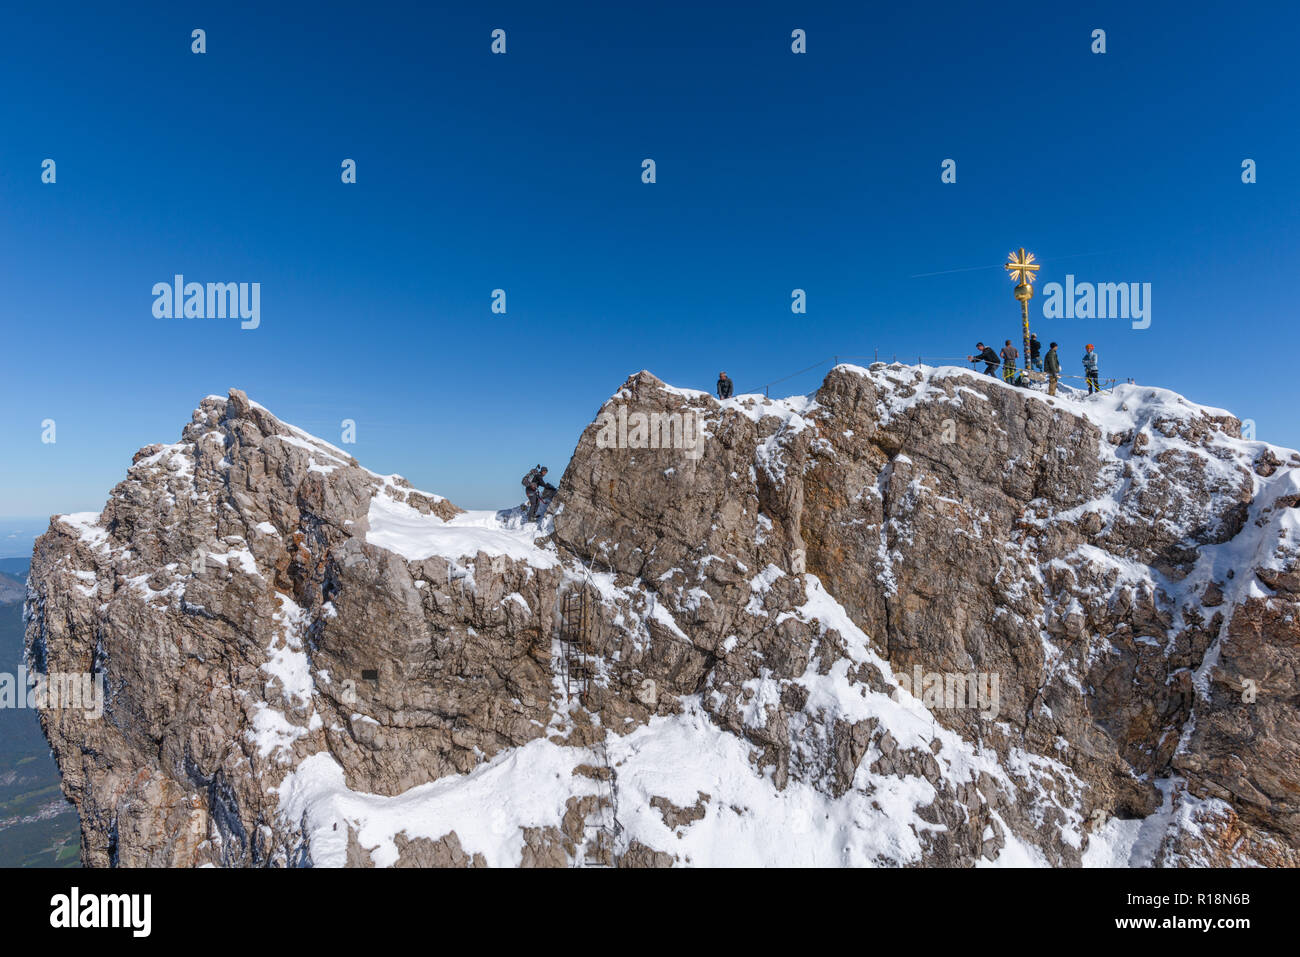 Summit cross, Zugsptize, highest peak, Garmisch-Partenkirchen, Wetterstein Gebirge or Wetterstein Mountains, the Alps, Bavaria, Germany, Europe Stock Photo